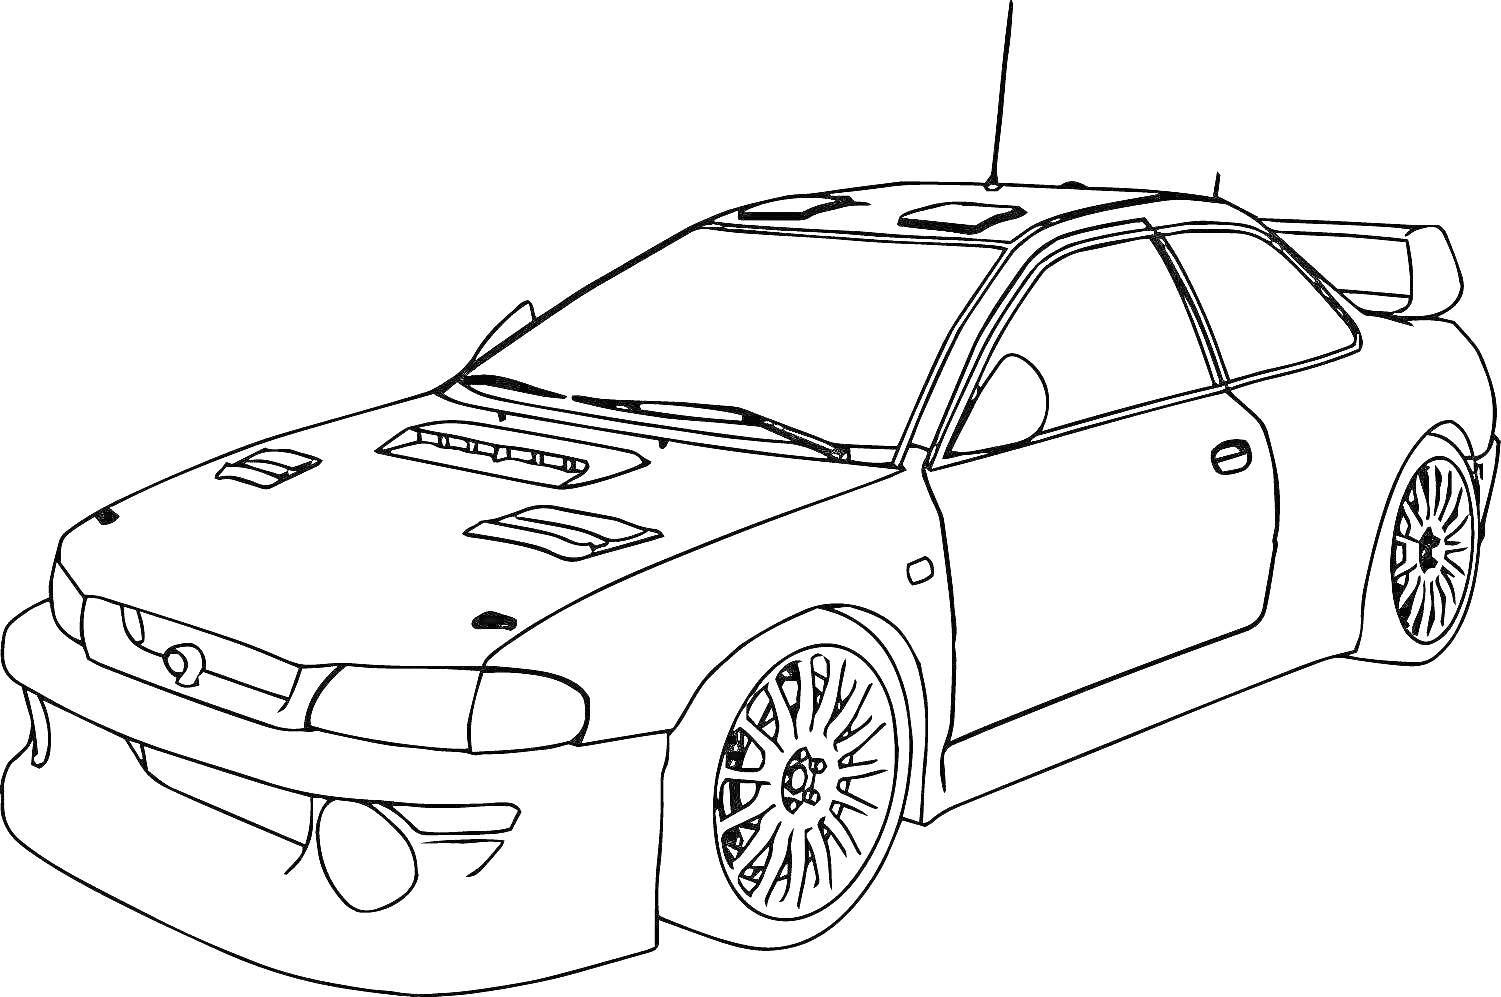 Раскраска Спортивный автомобиль с аэродинамическим обвесом, двумя воздухозаборниками на капоте, большими литыми дисками и антеной на крыше